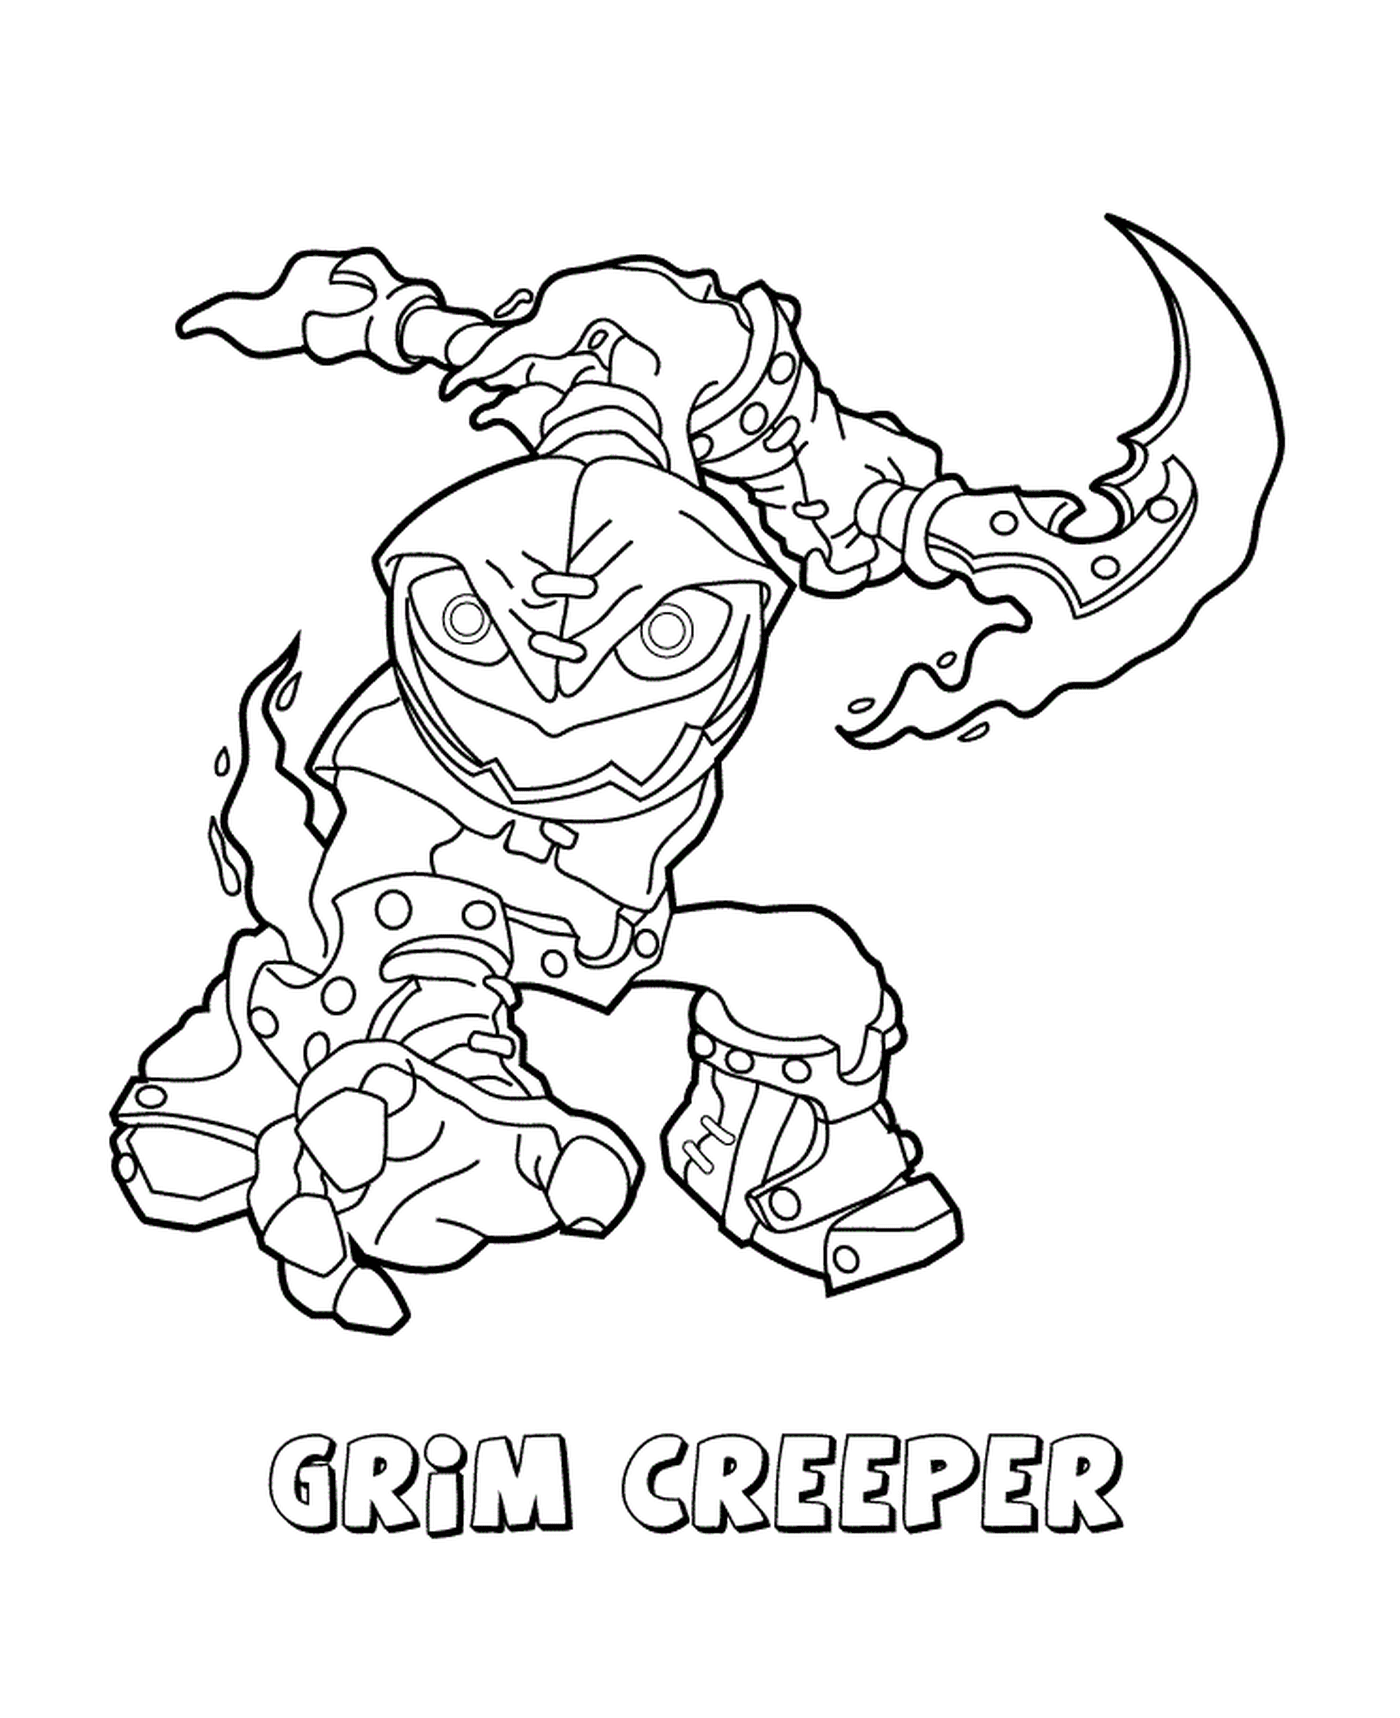  Skylanders Swap Force Undead Grim Creeper formidable 